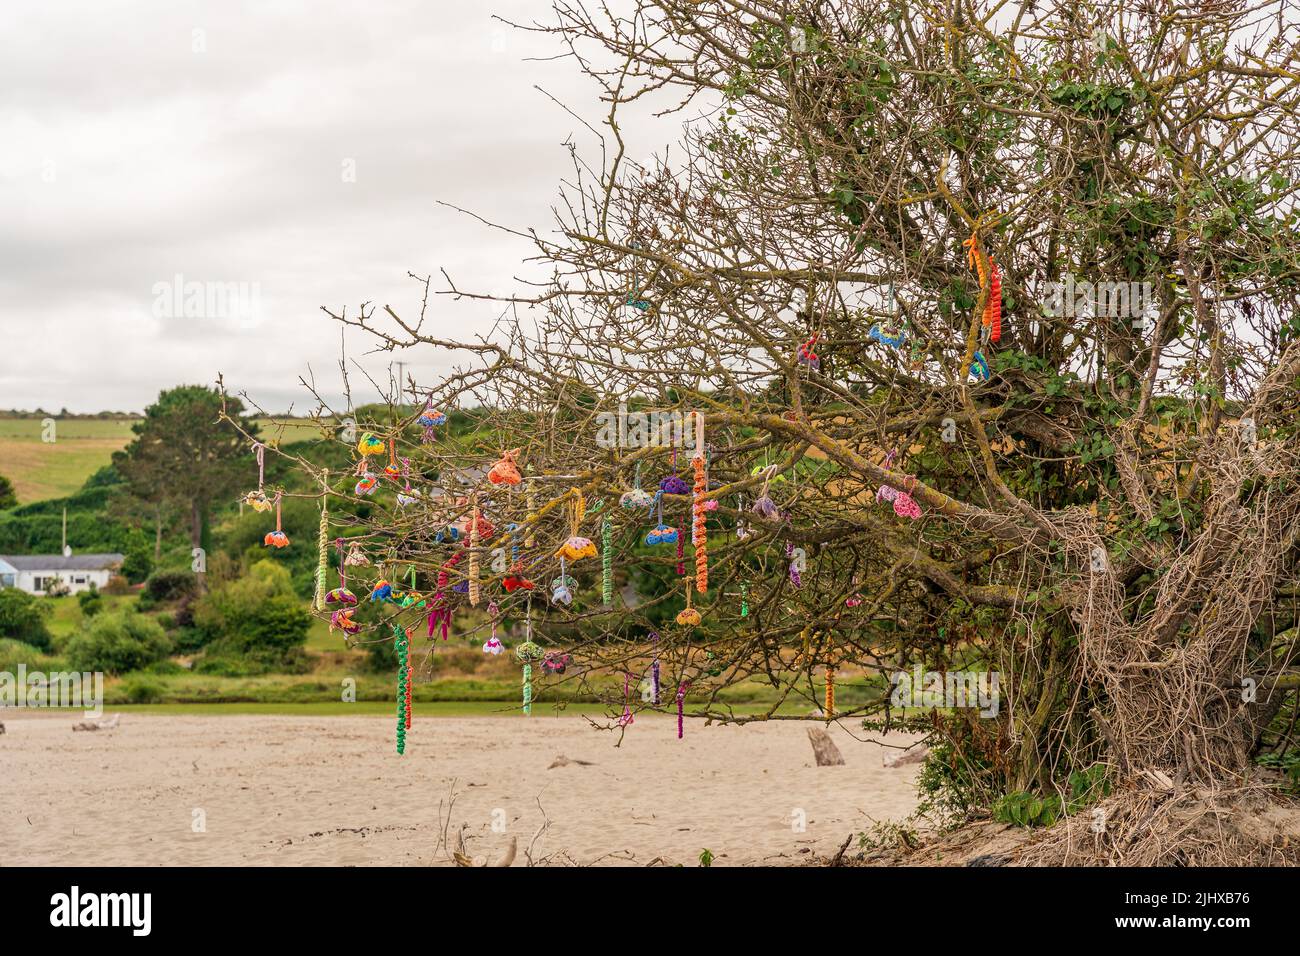 Art de plage créé par des artisans artisanaux et accroché dans des arbres naturels sur la plage Banque D'Images